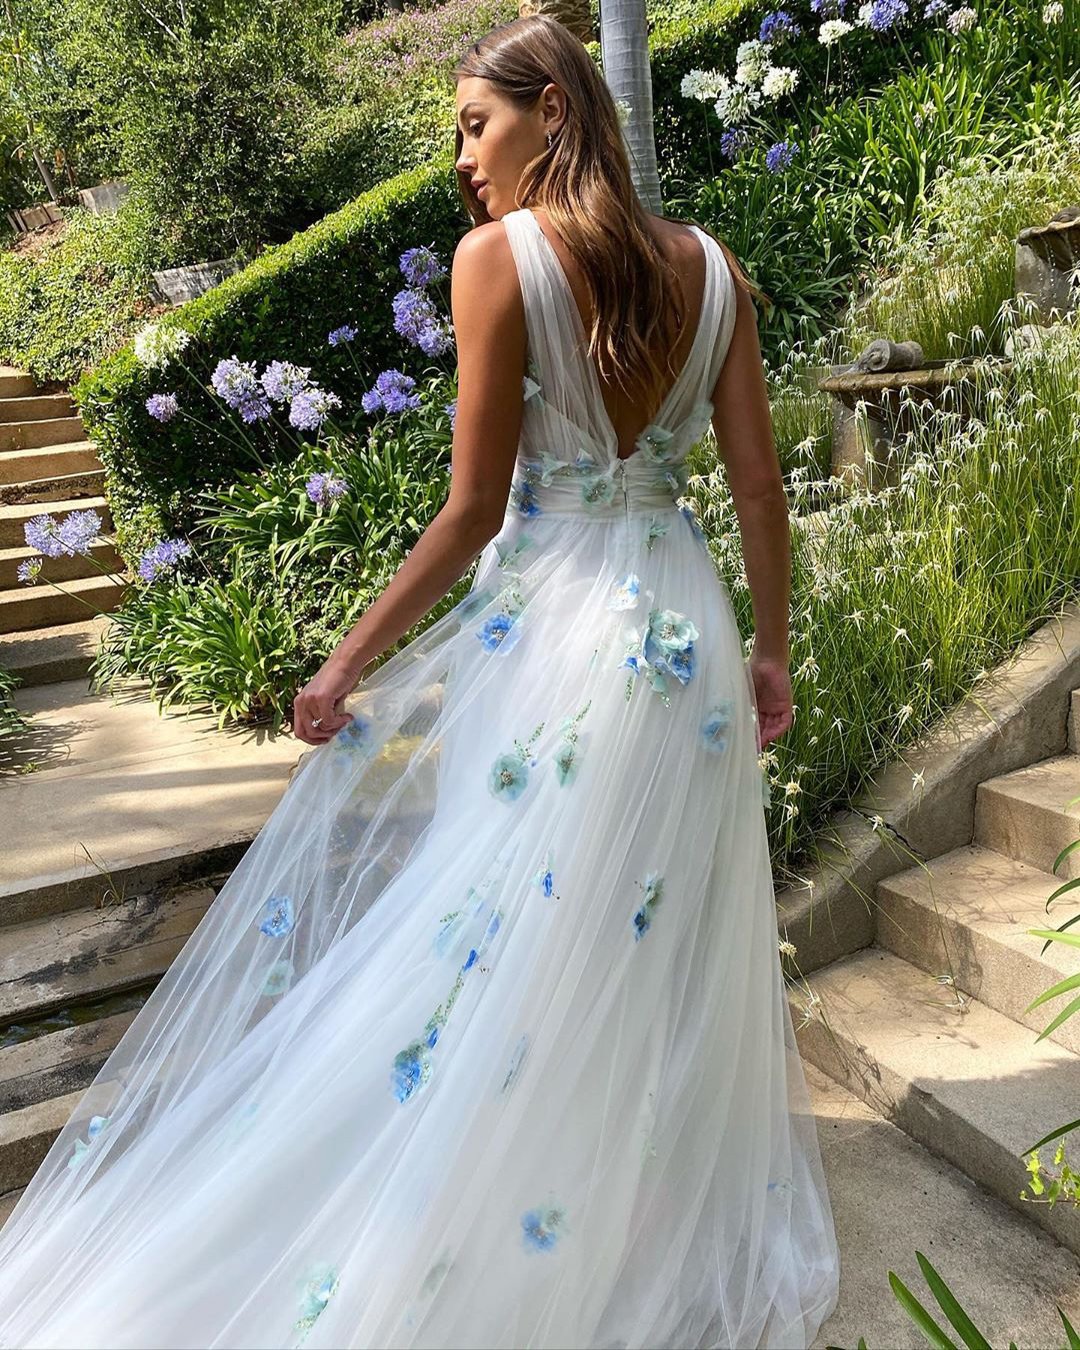 floral wedding dresses a line v back with blue appliques white monique